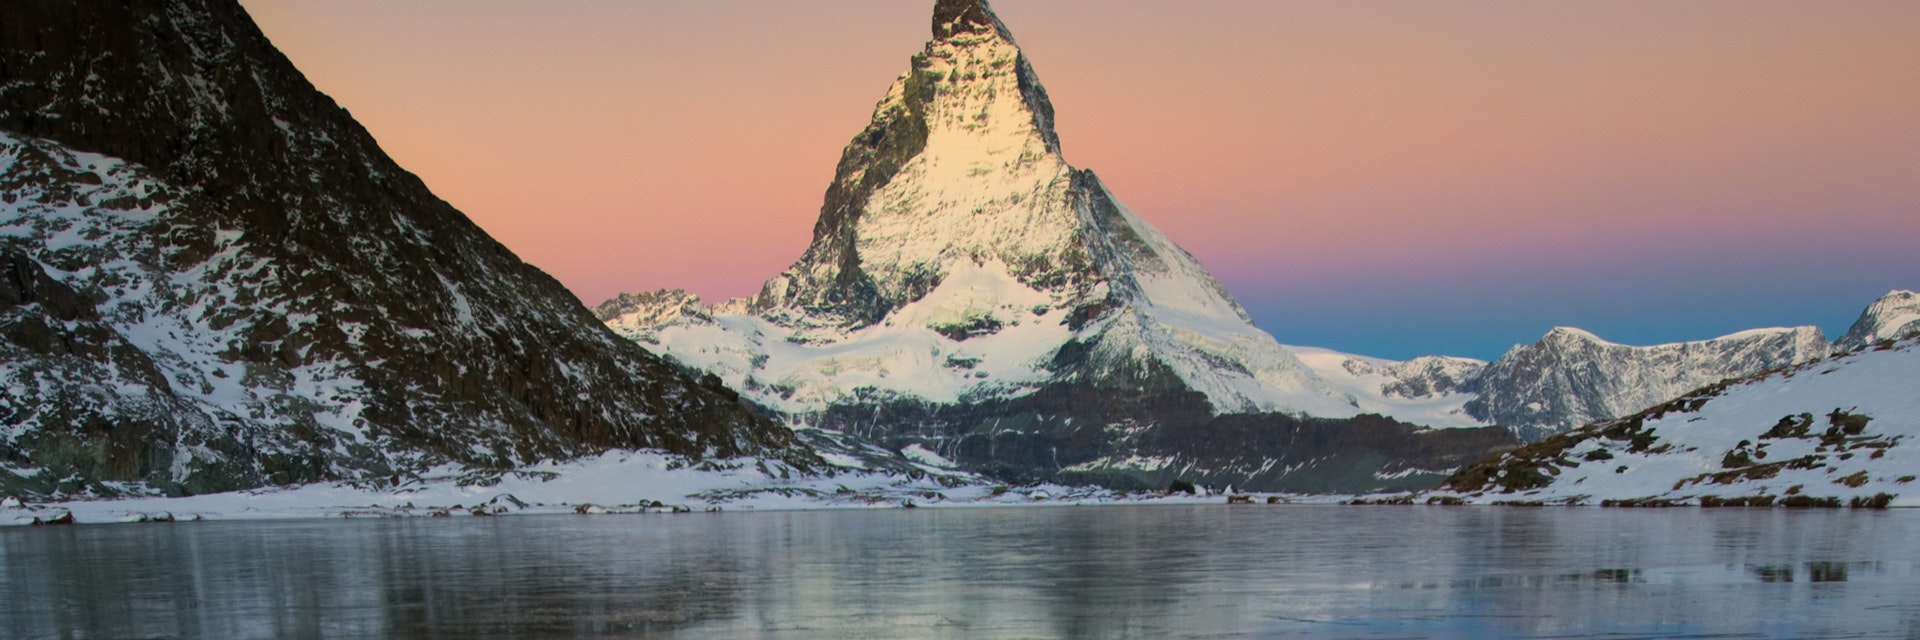 Matterhorn mountain at dusk